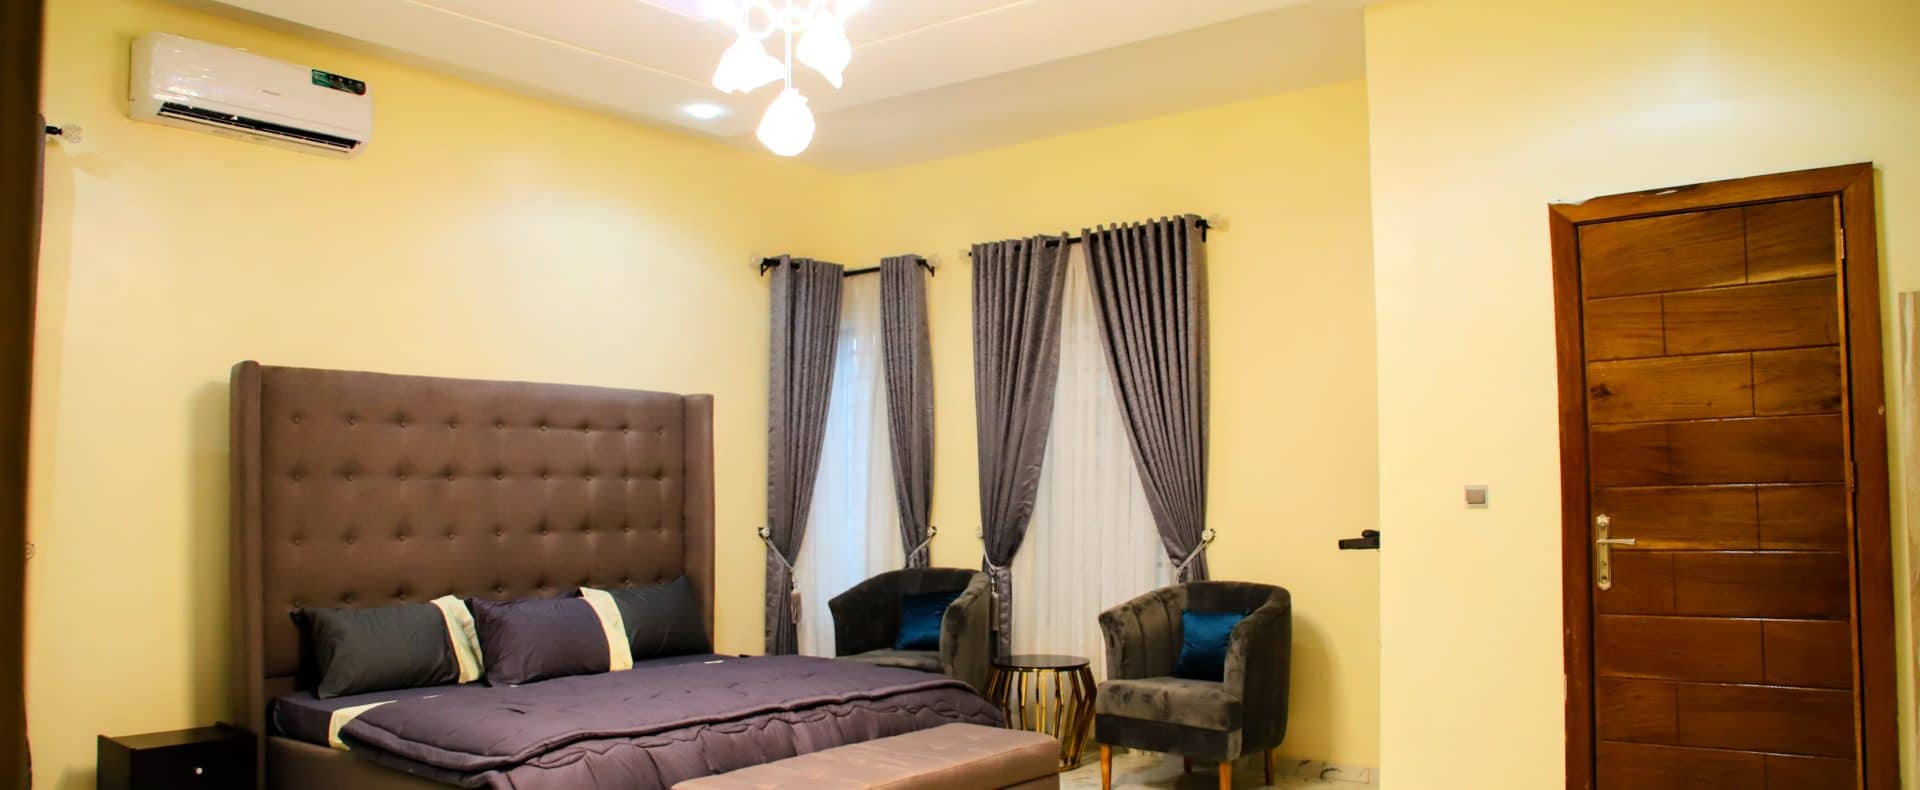 4 Bedroom Comfort Haven Short Let In Lekki Lagos Nigeria